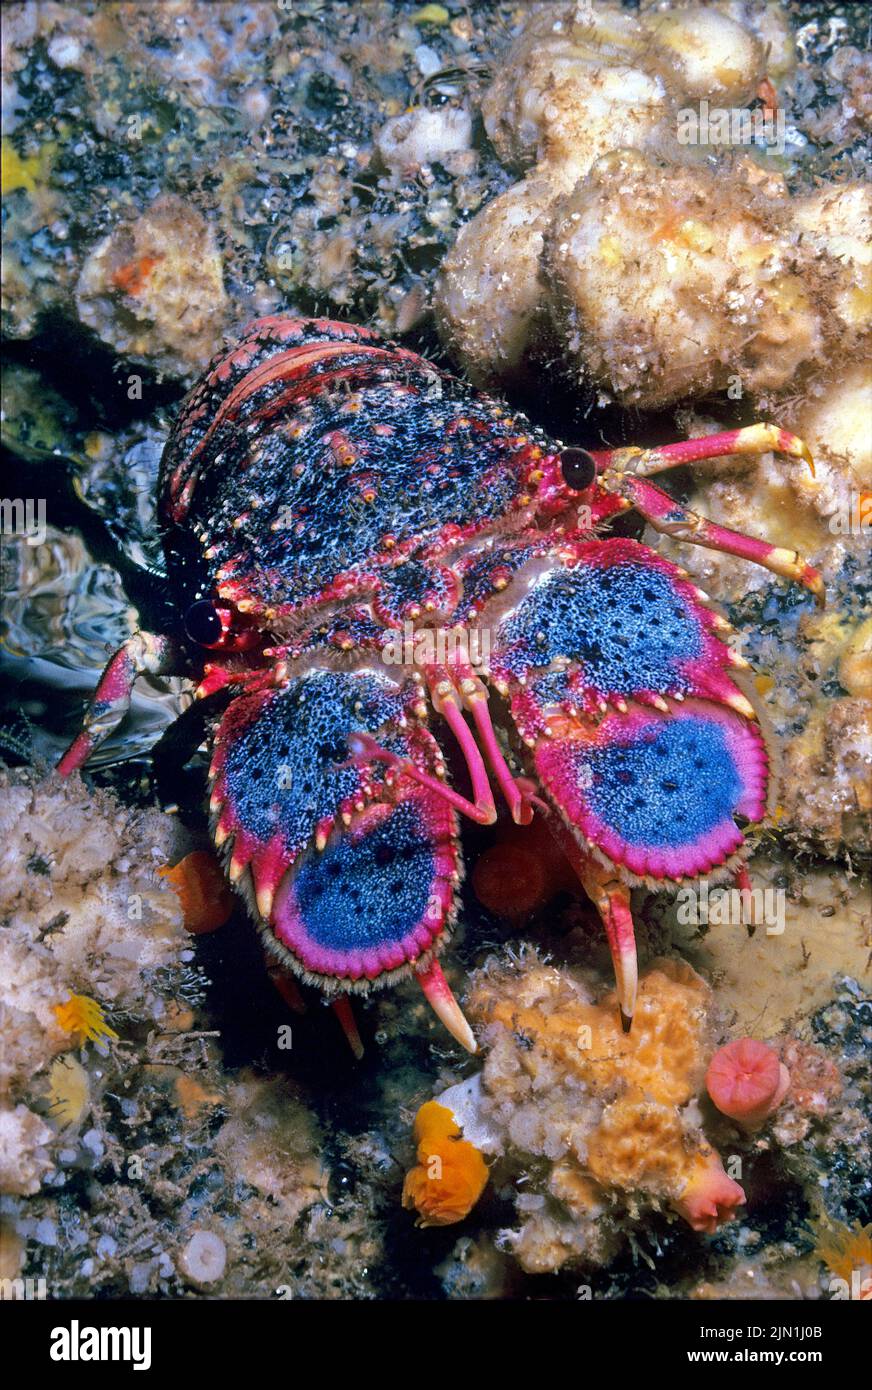 Royal Spanish Lobster (Arctides regalis), sono anche chiamati aragoste con naso di pala, è noto come ula-papapa nelle Hawaii, Oceano Pacifico Foto Stock